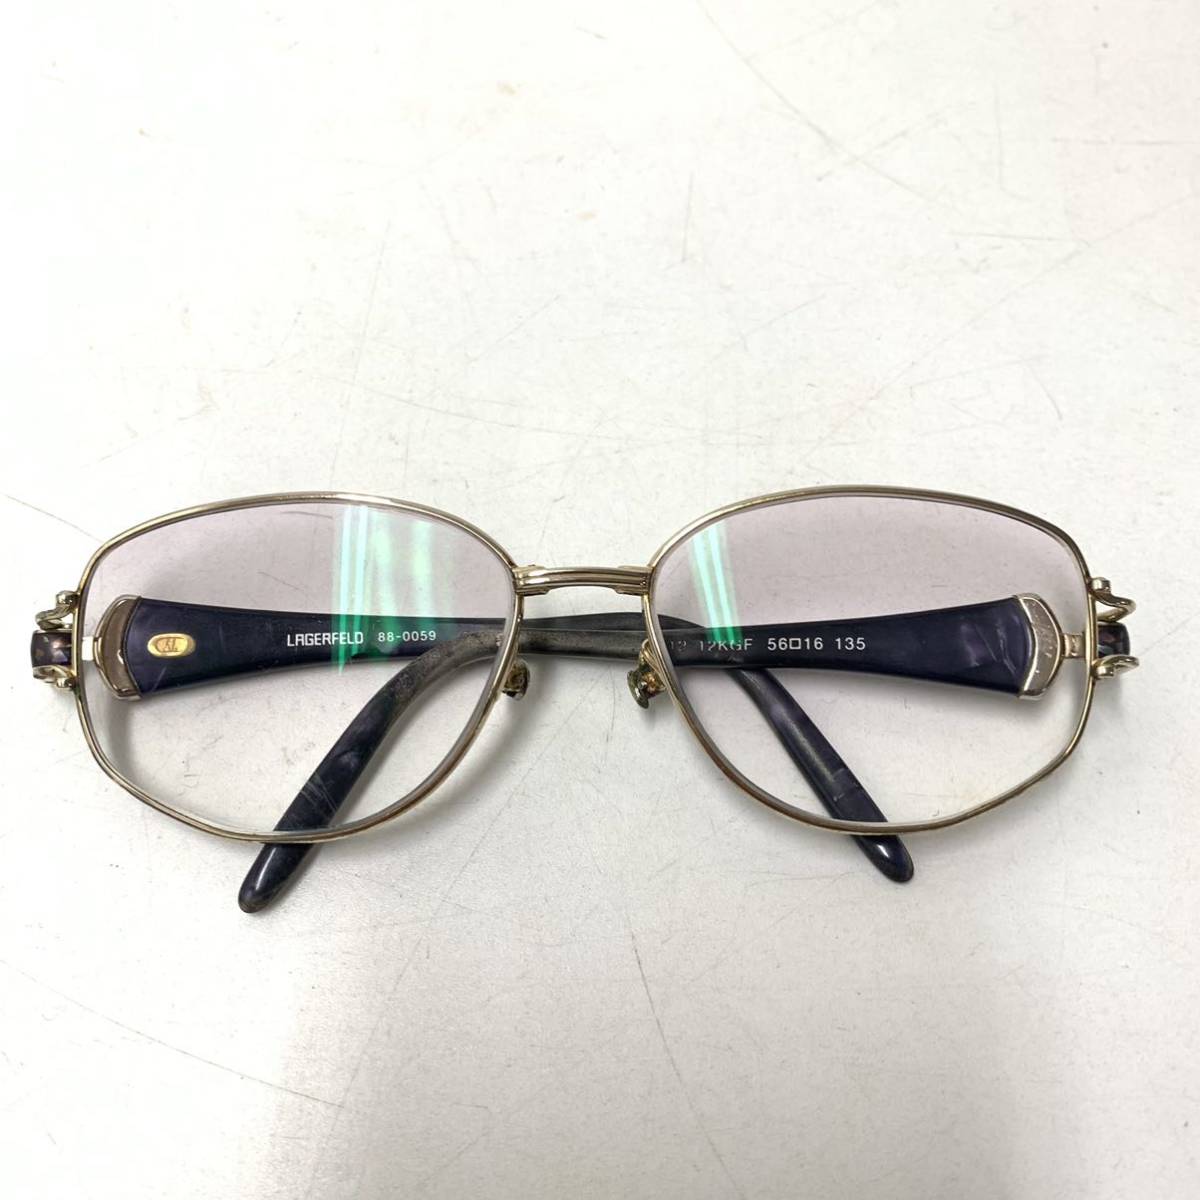 VINTAGE Lagerfeld 12KGF マーブル模様 メガネ 眼鏡 88-0059 ゴールド 金張り ヴィンテージ ラガーフェルド【レターパックプラス郵送可】_画像1